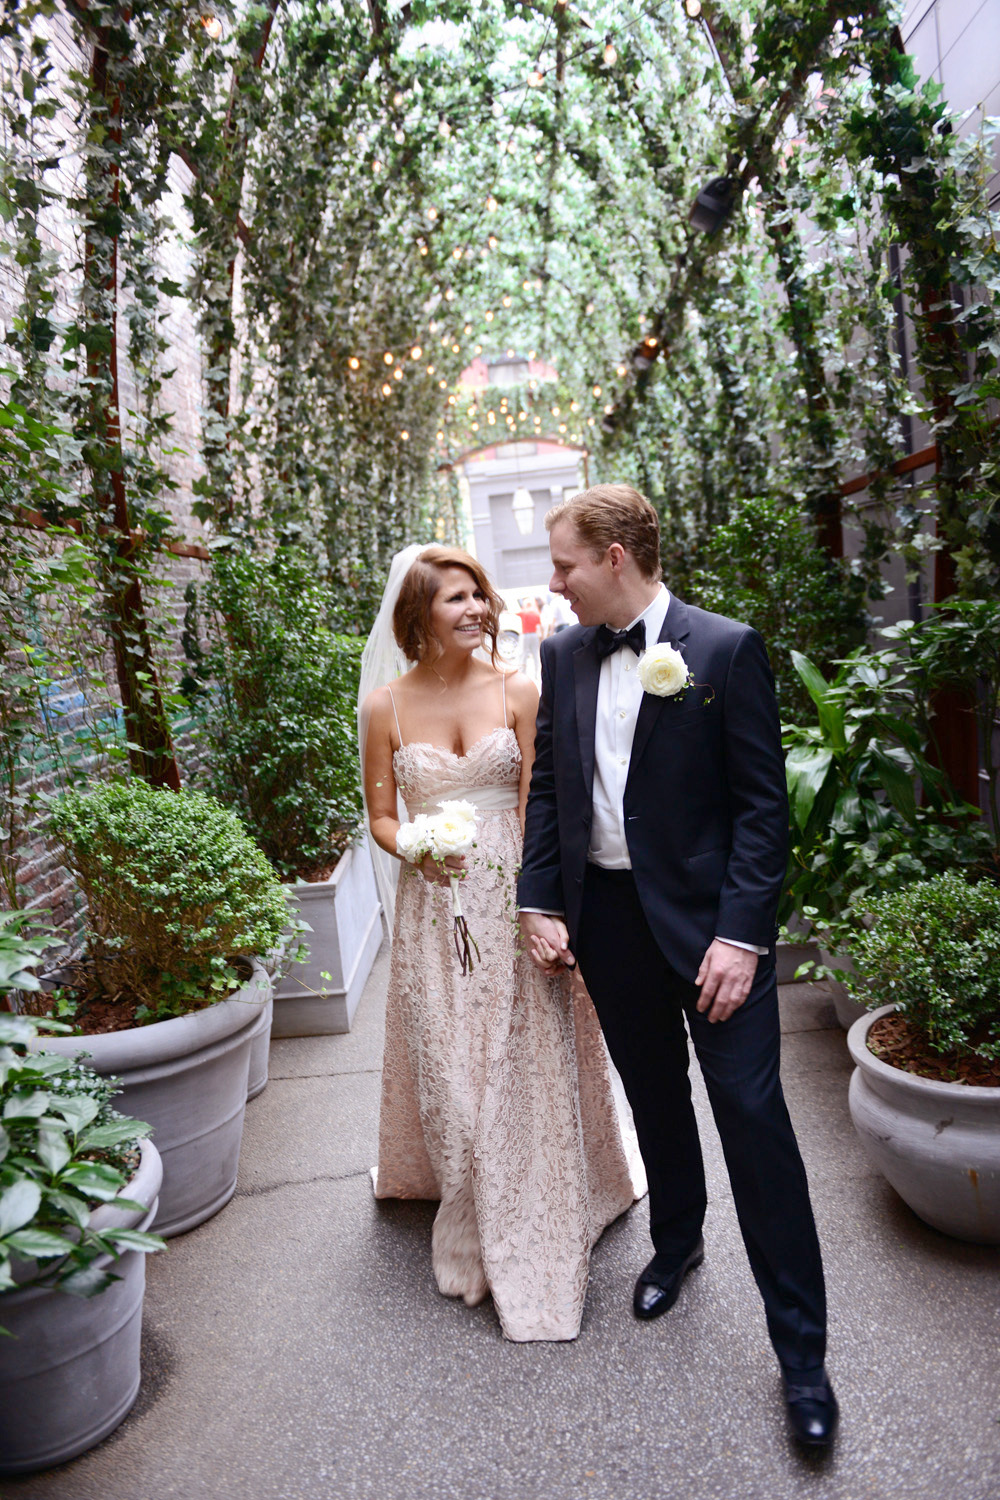 Josie und Brent heiraten in New York auf der Dachterasse im NoMo SoHo Hotel. Fotografiert von Hochzeitsfotograf New York XOANDREA